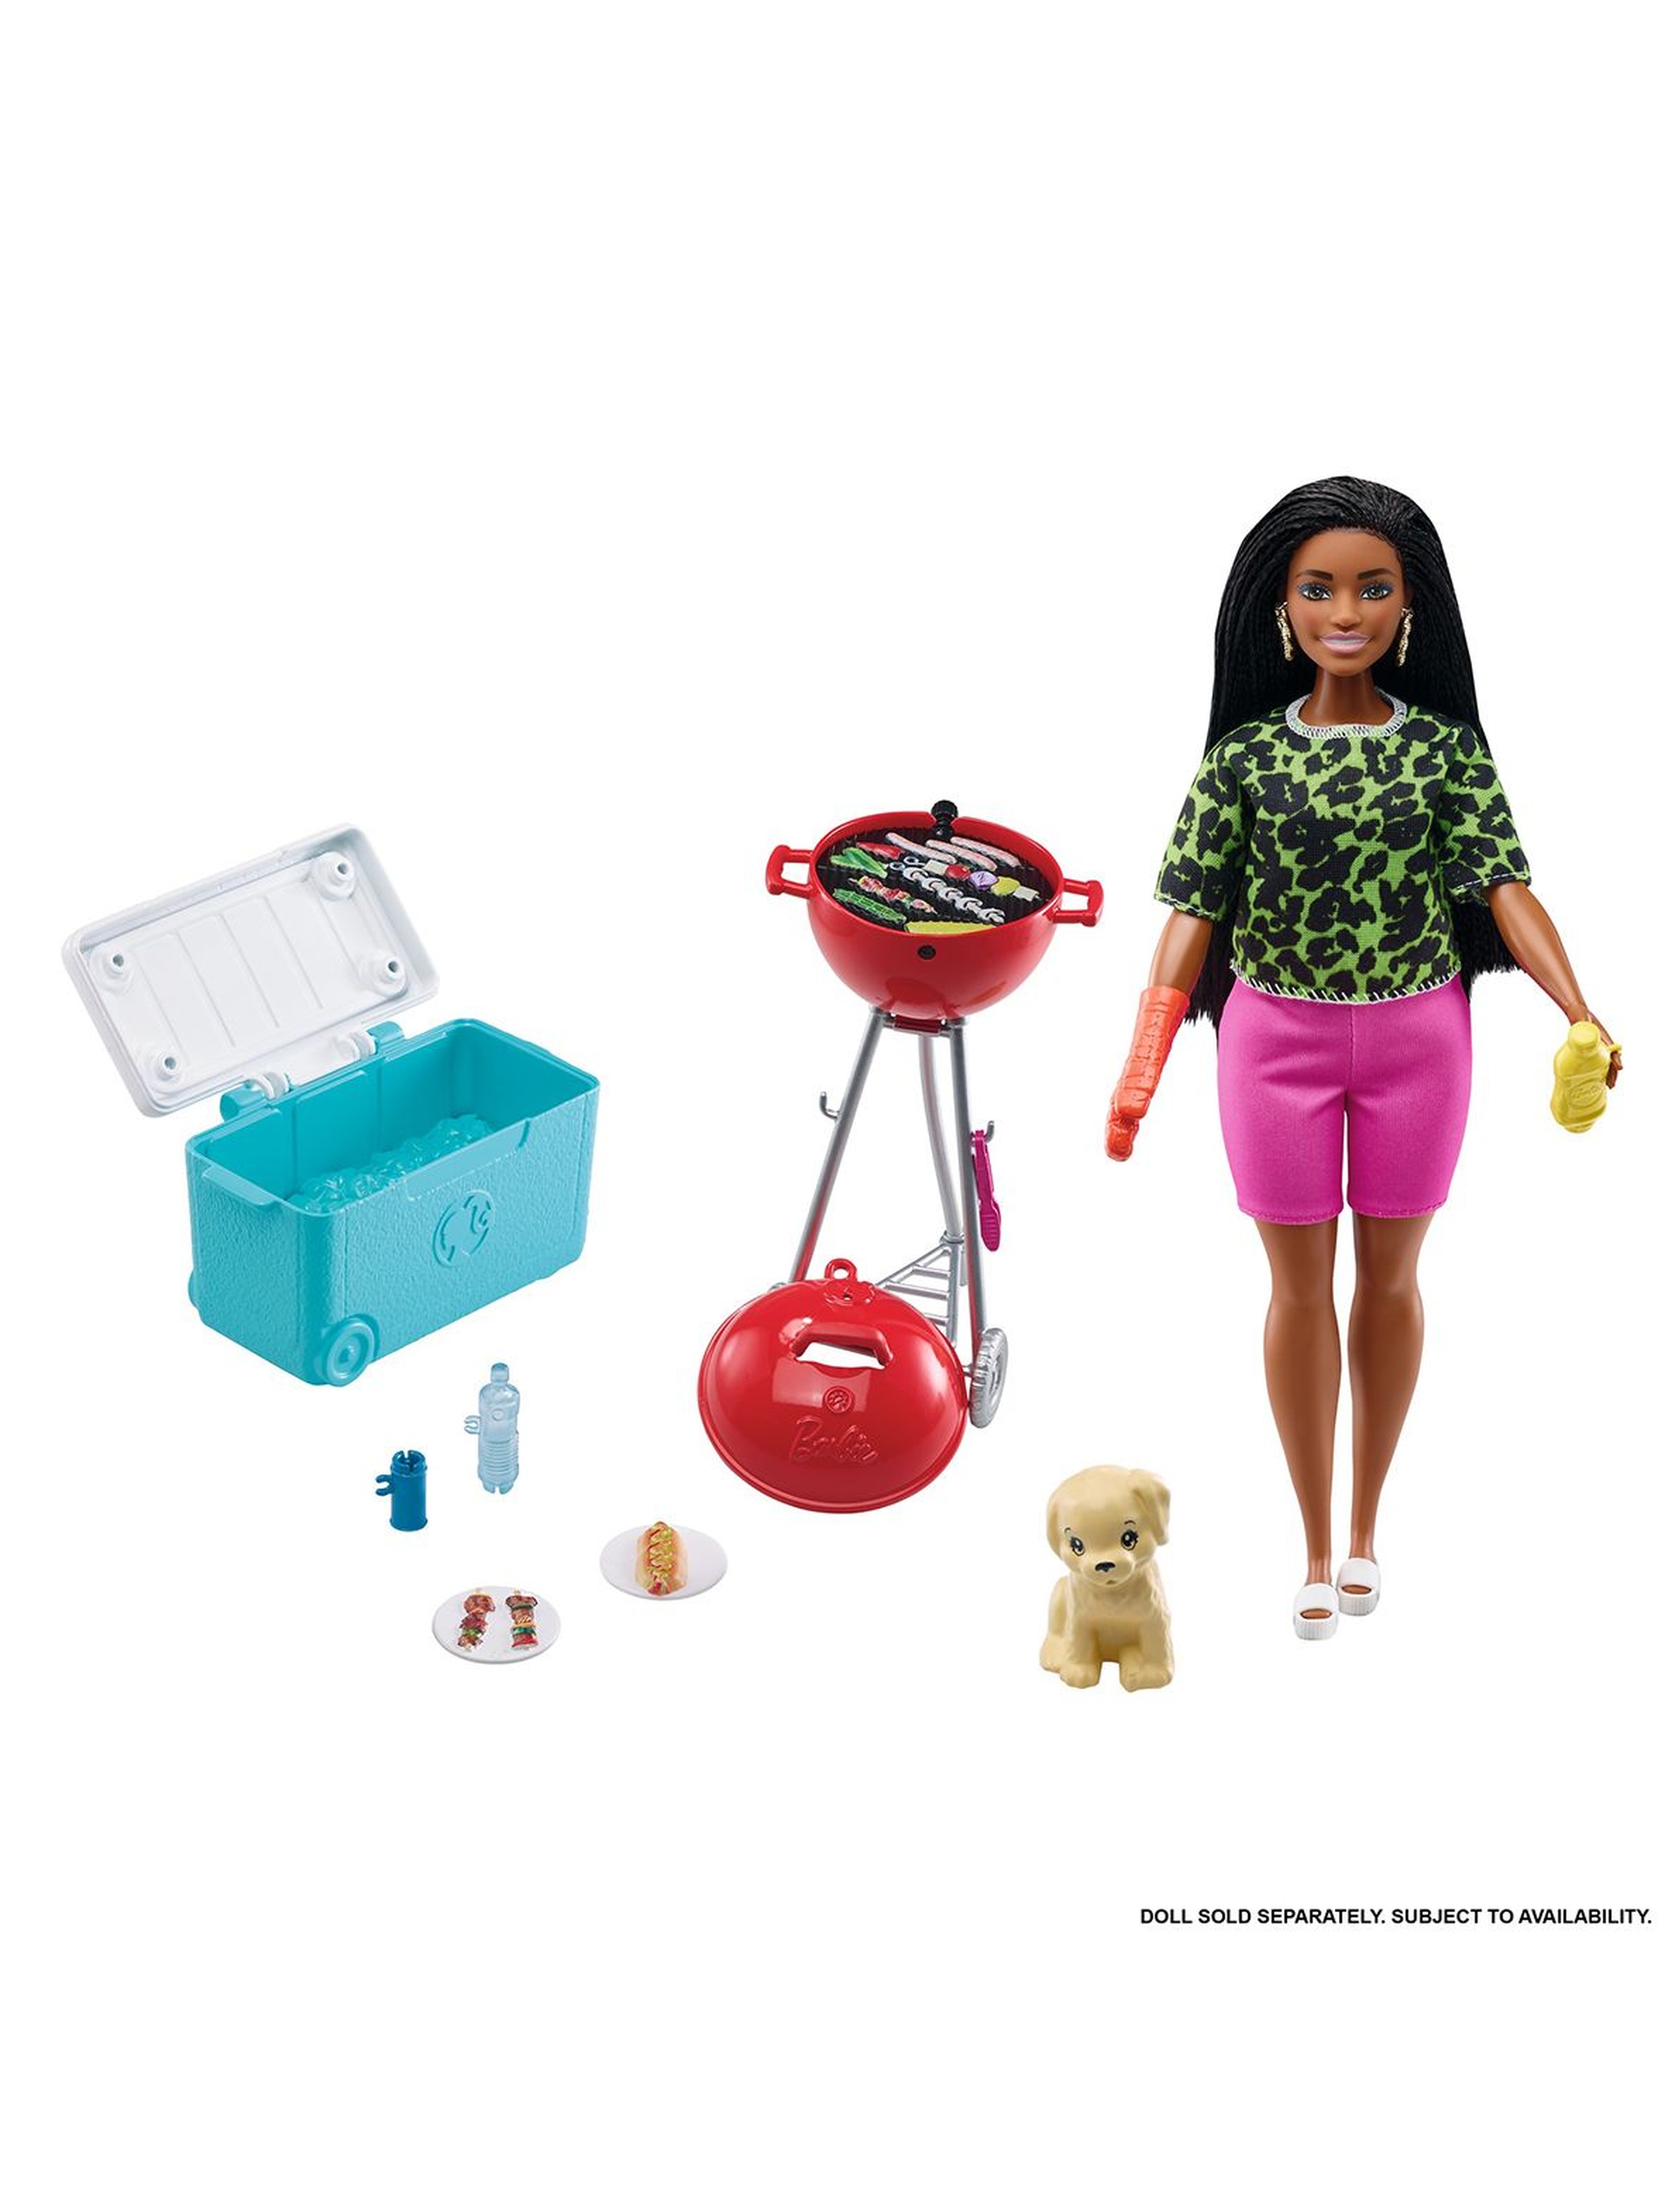 Barbie Minizestaw Świat Barbie wiek 3+